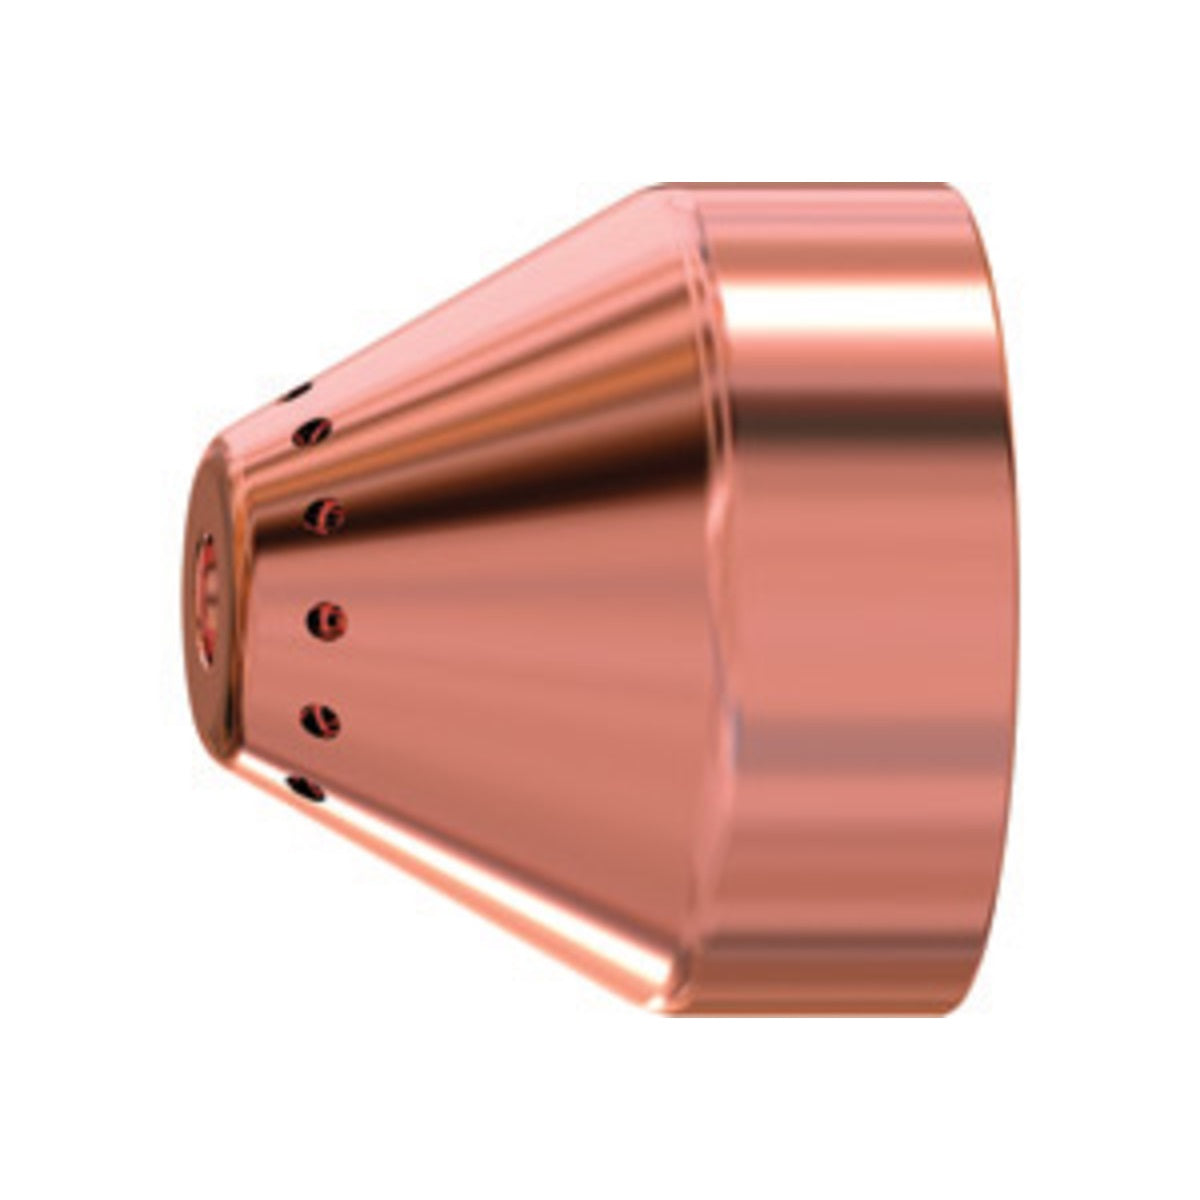 Hypertherm 220817 Duramax 15-85A Mech Shield/Deflector Bulk Pkg/10 (228763)